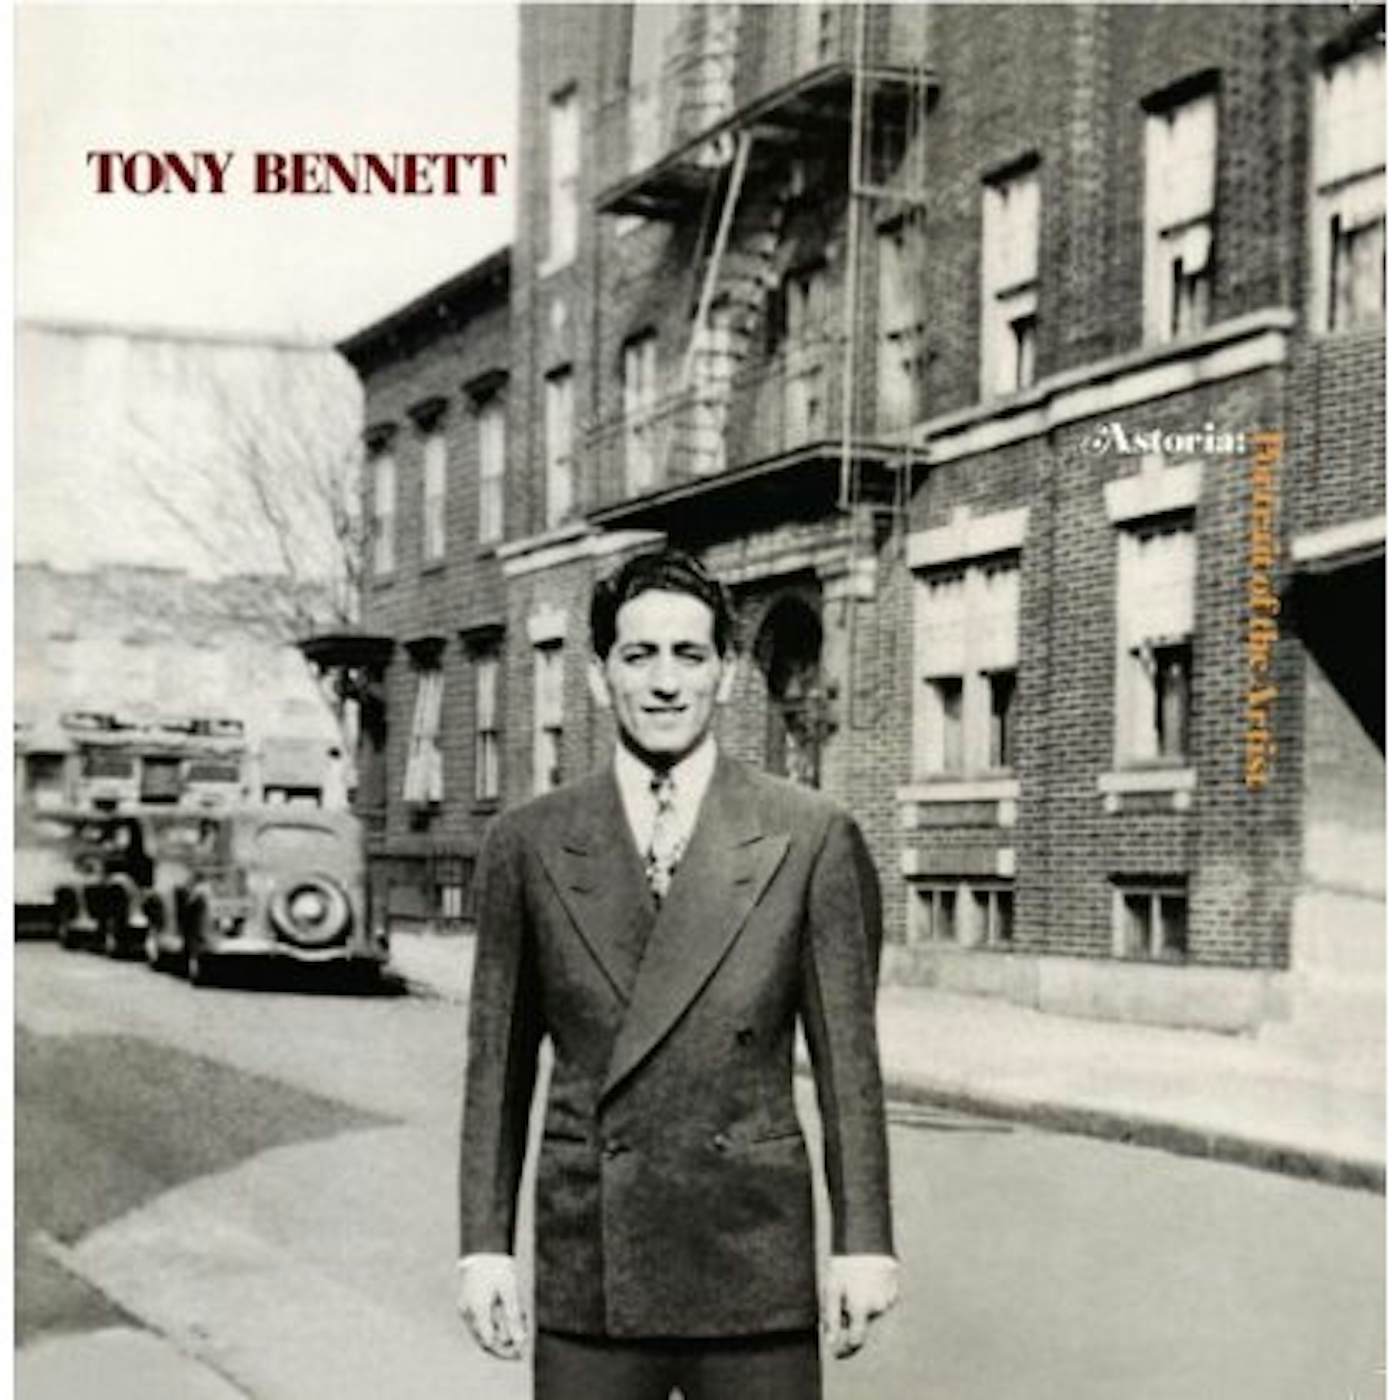 Tony Bennett ASTORIA: PORTRAIT OF THE ARTIST CD